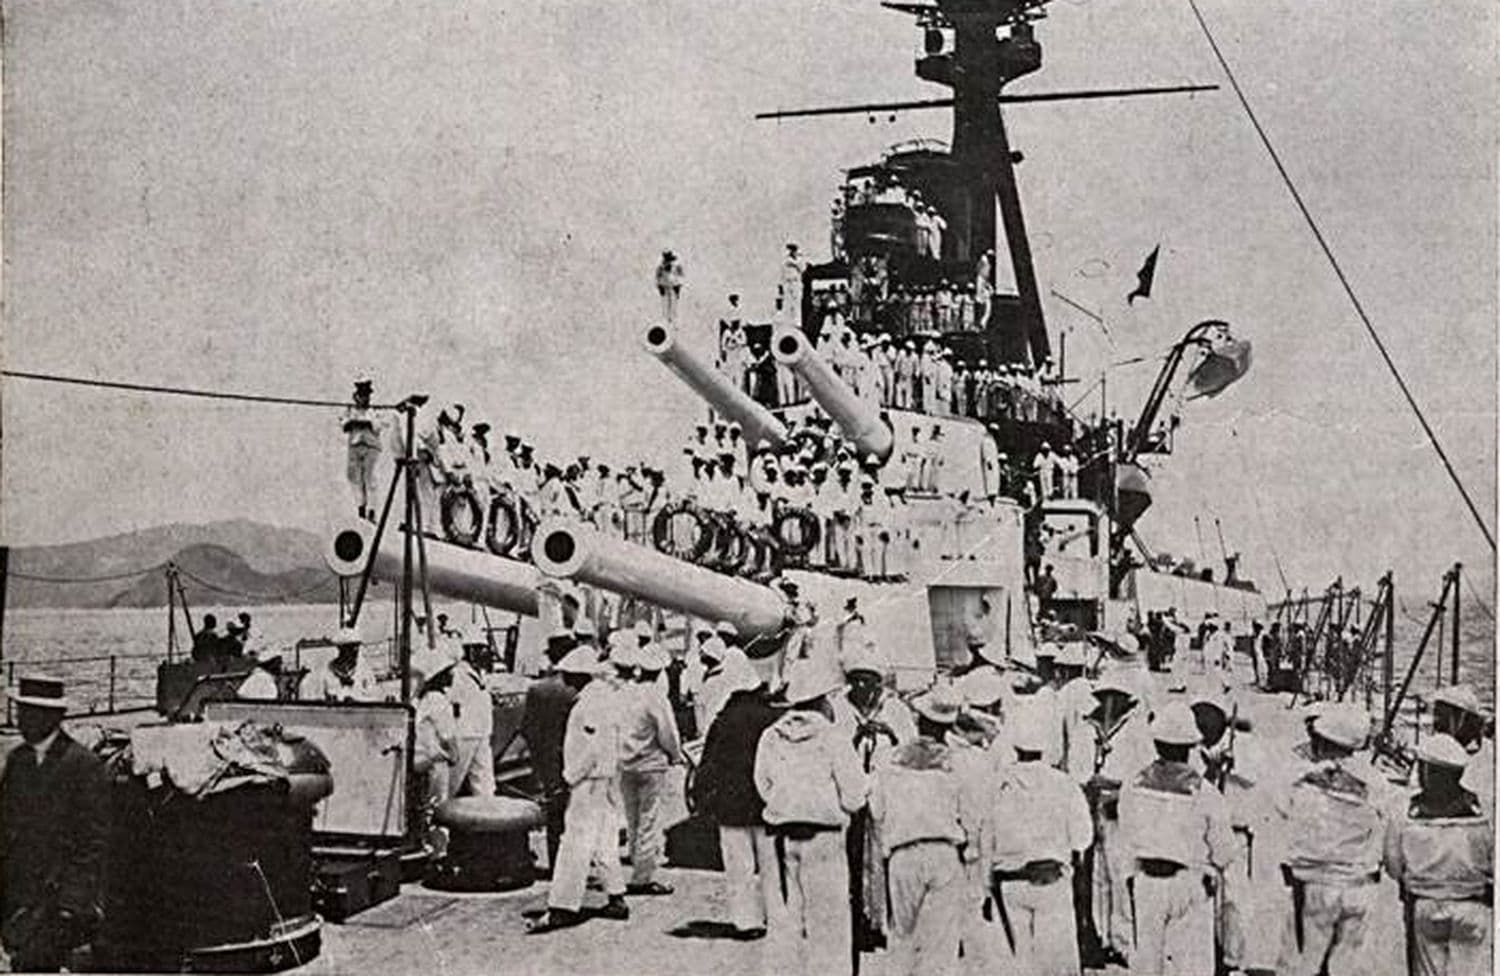 Há 110 anos, marujos denunciaram chibata na Marinha e racismo no Brasil pós-abolição